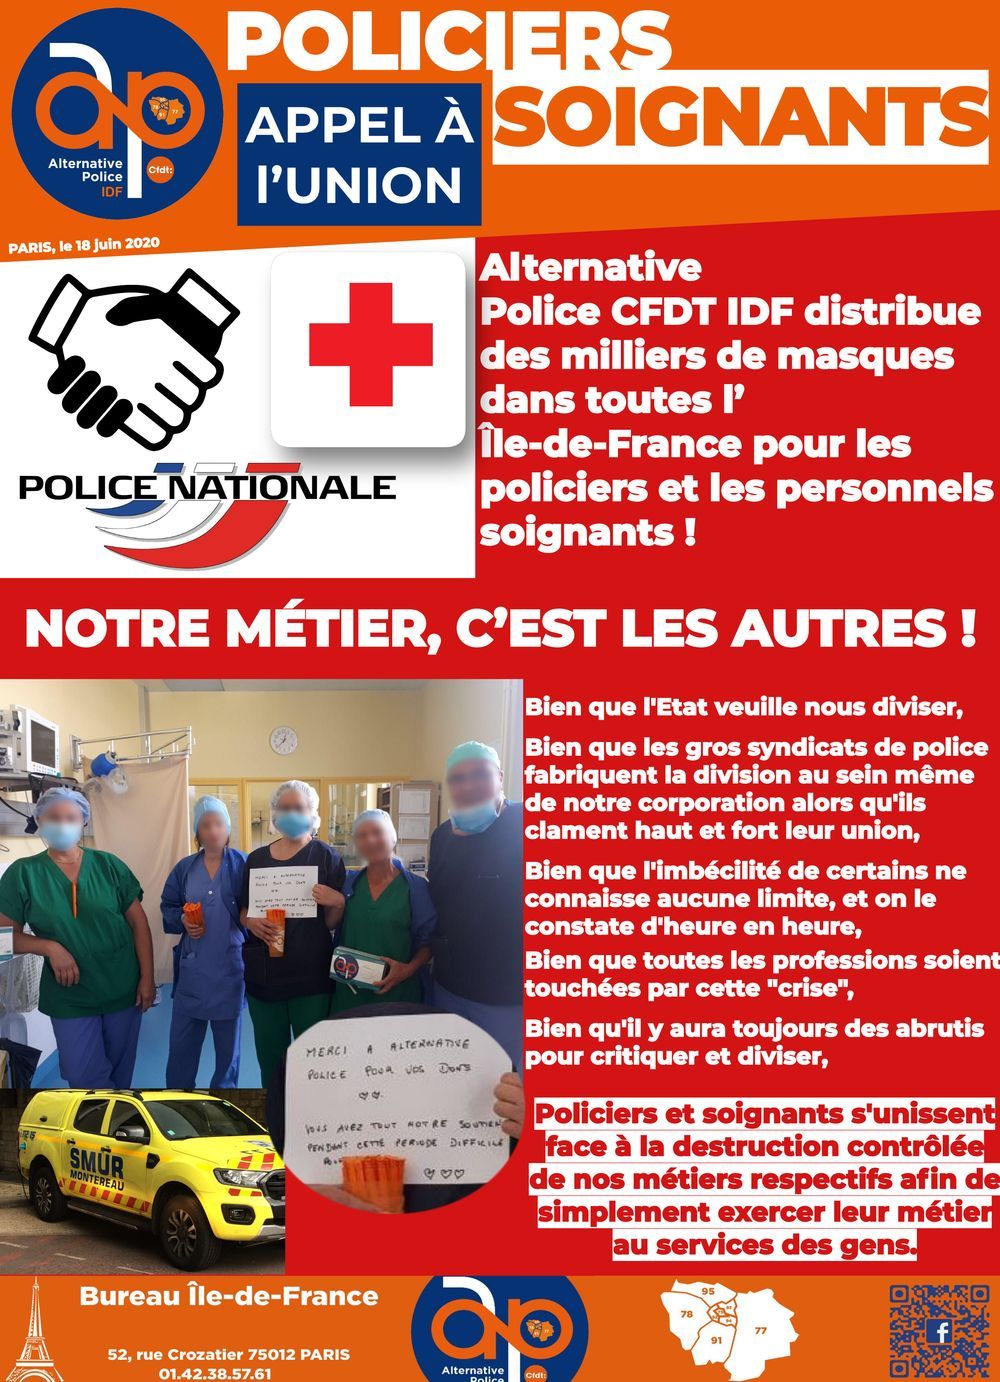 POLICIERS - SOIGNANTS : Appel à l'union !